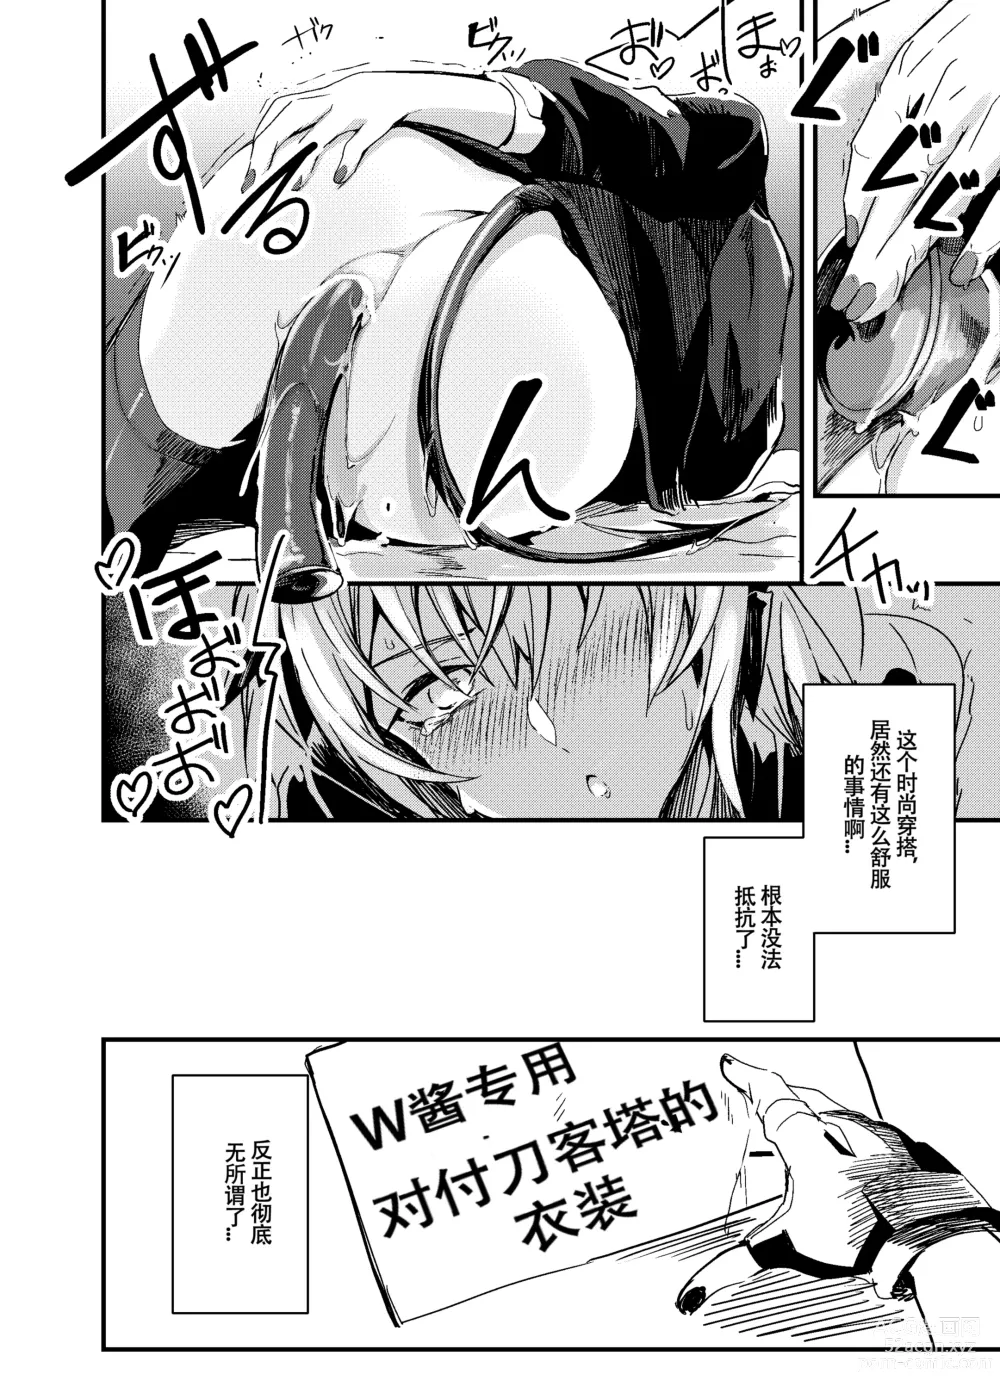 Page 11 of doujinshi 睡不着的炸弹狂人W酱~!